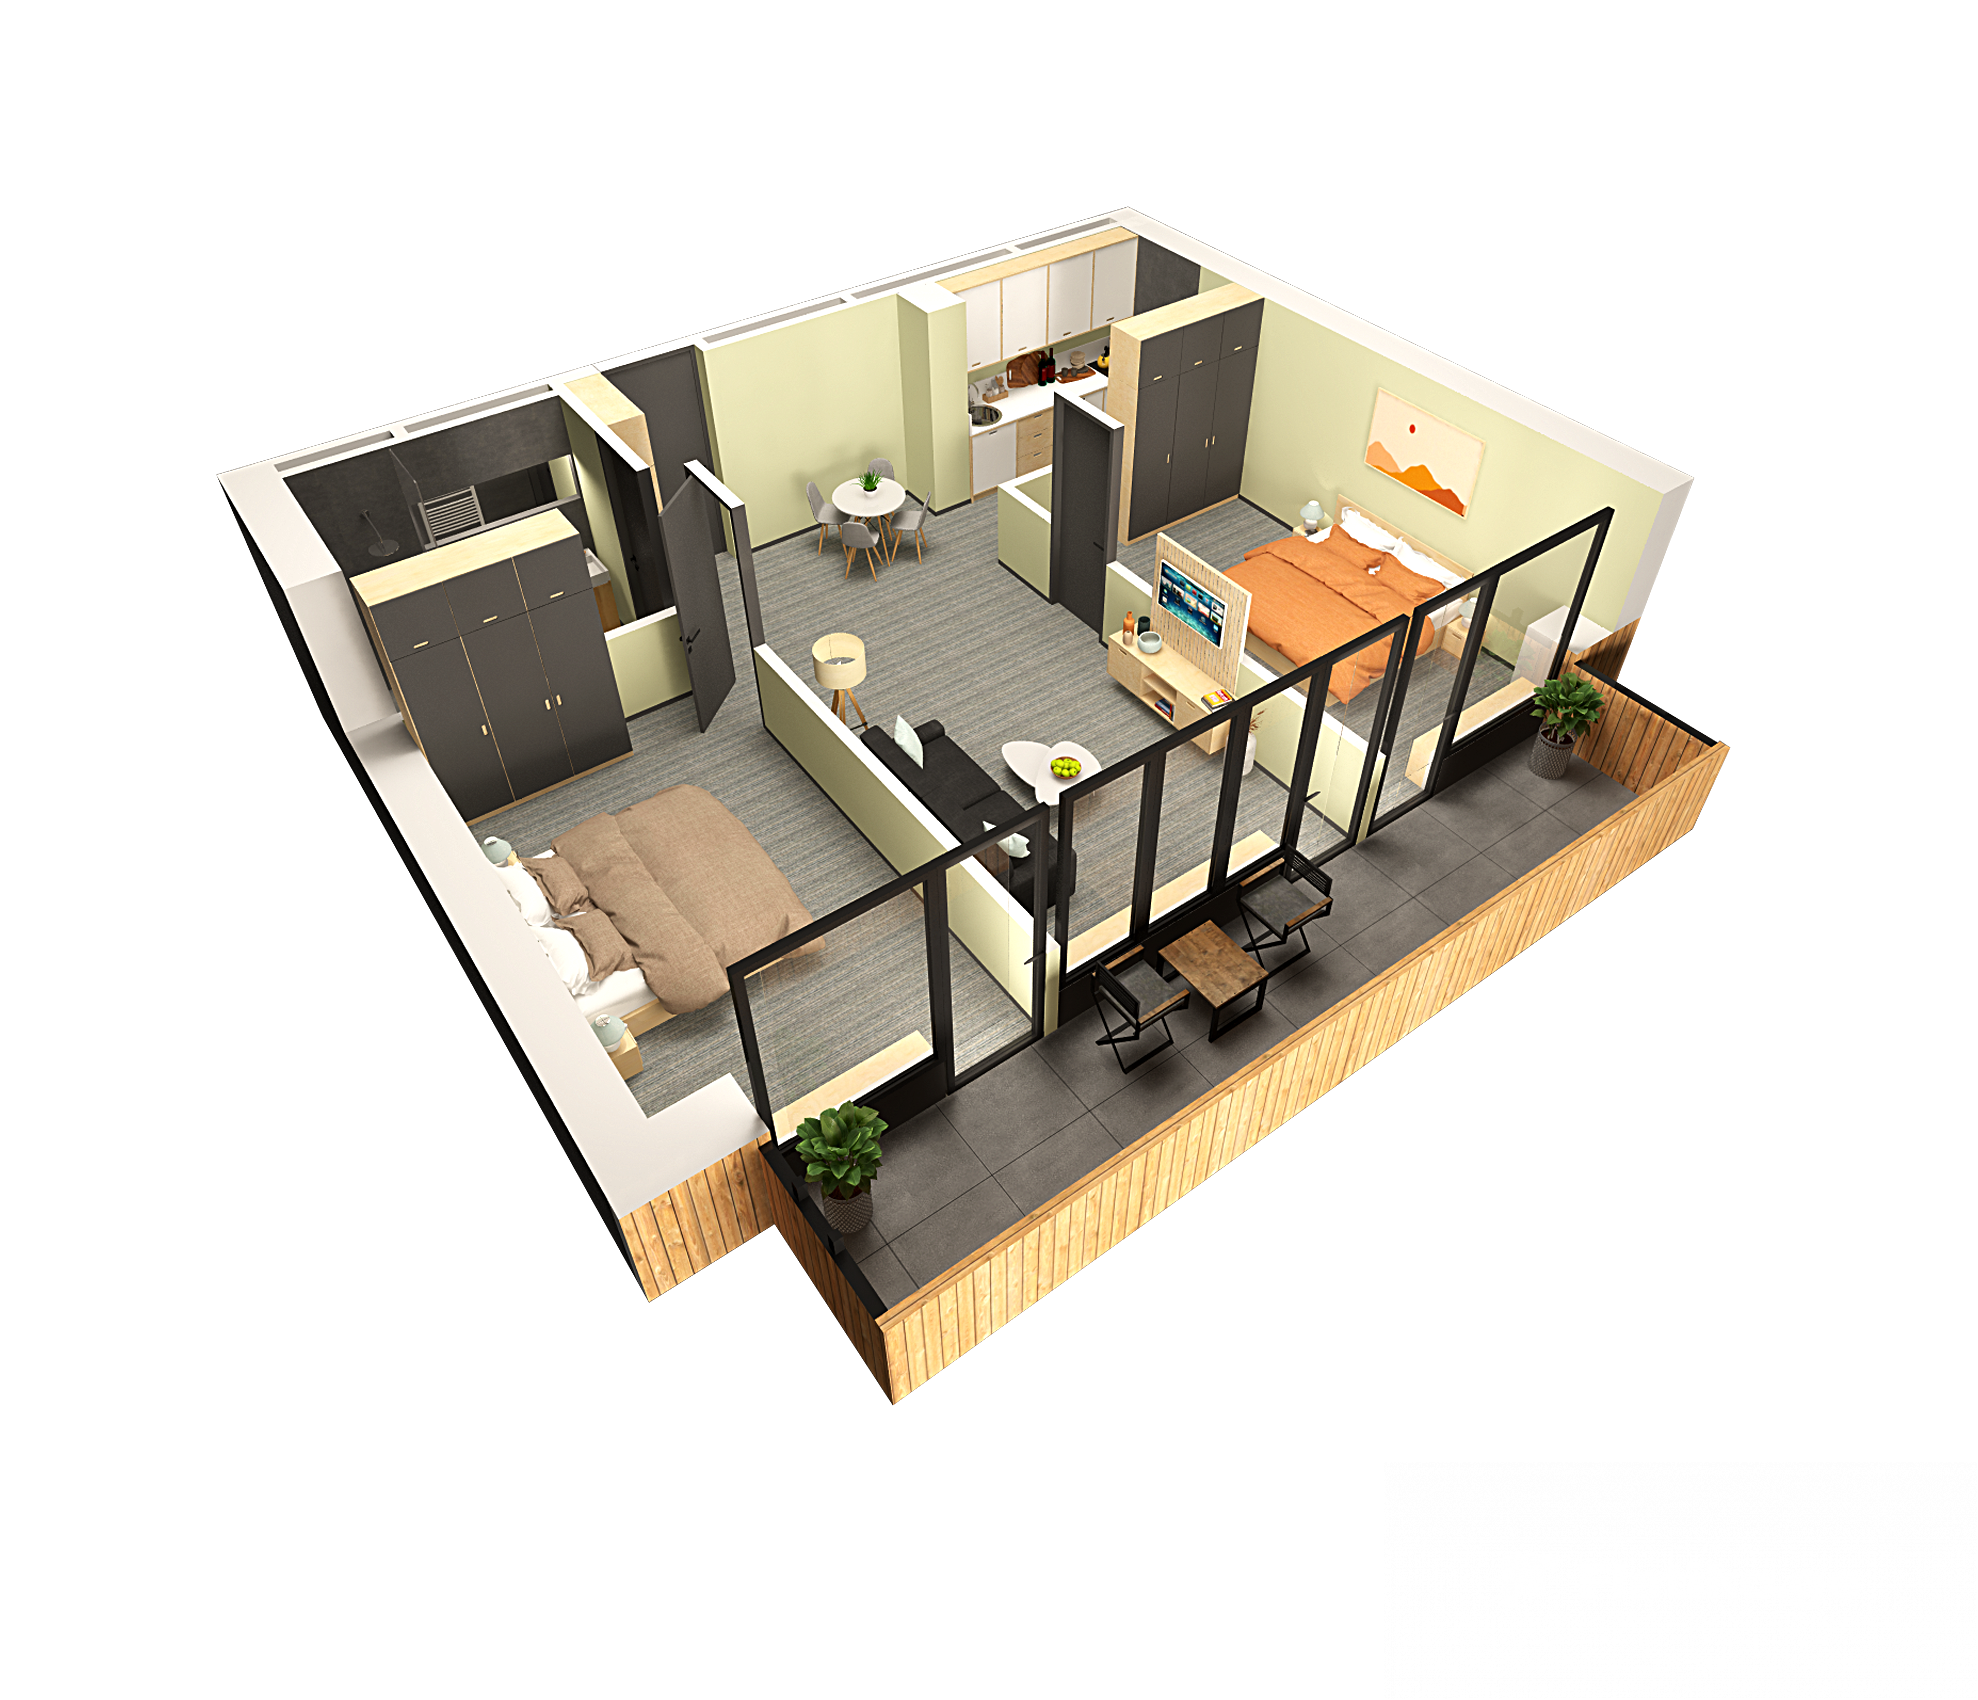 2-Bedroom